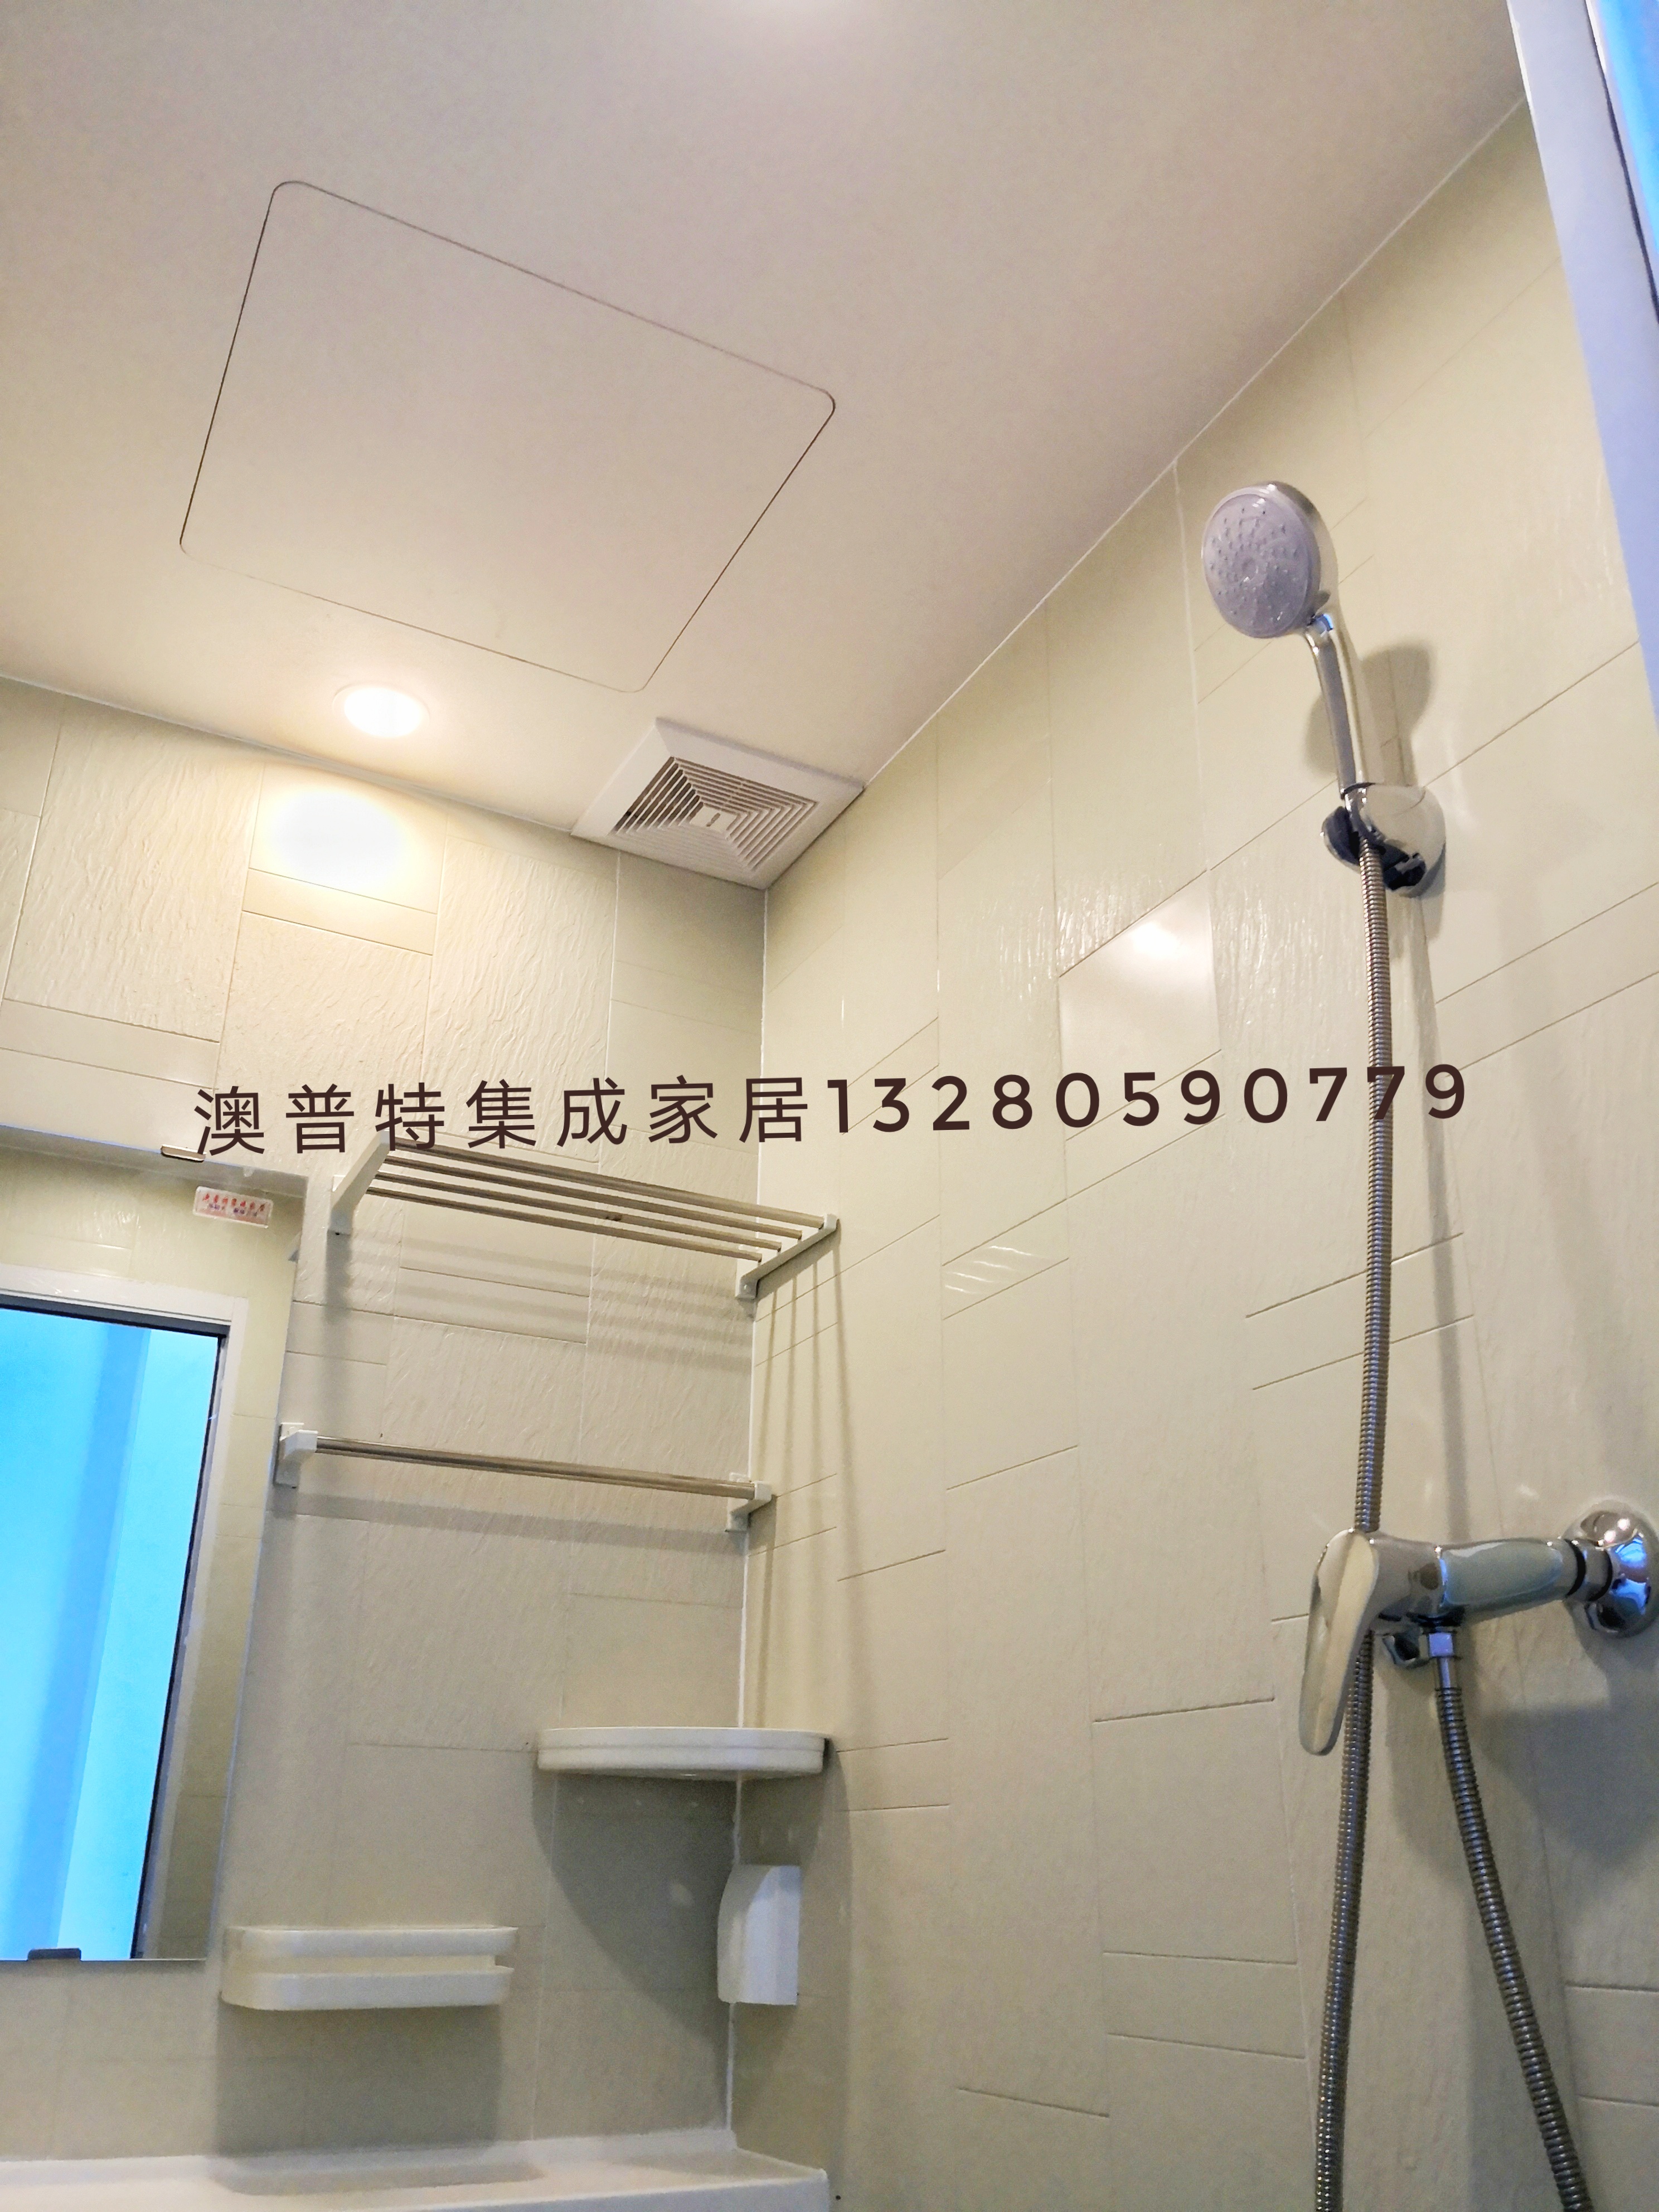 整体浴室 集式卫生间 临沂澳普特集成家居 日式整体卫生间 价格实惠